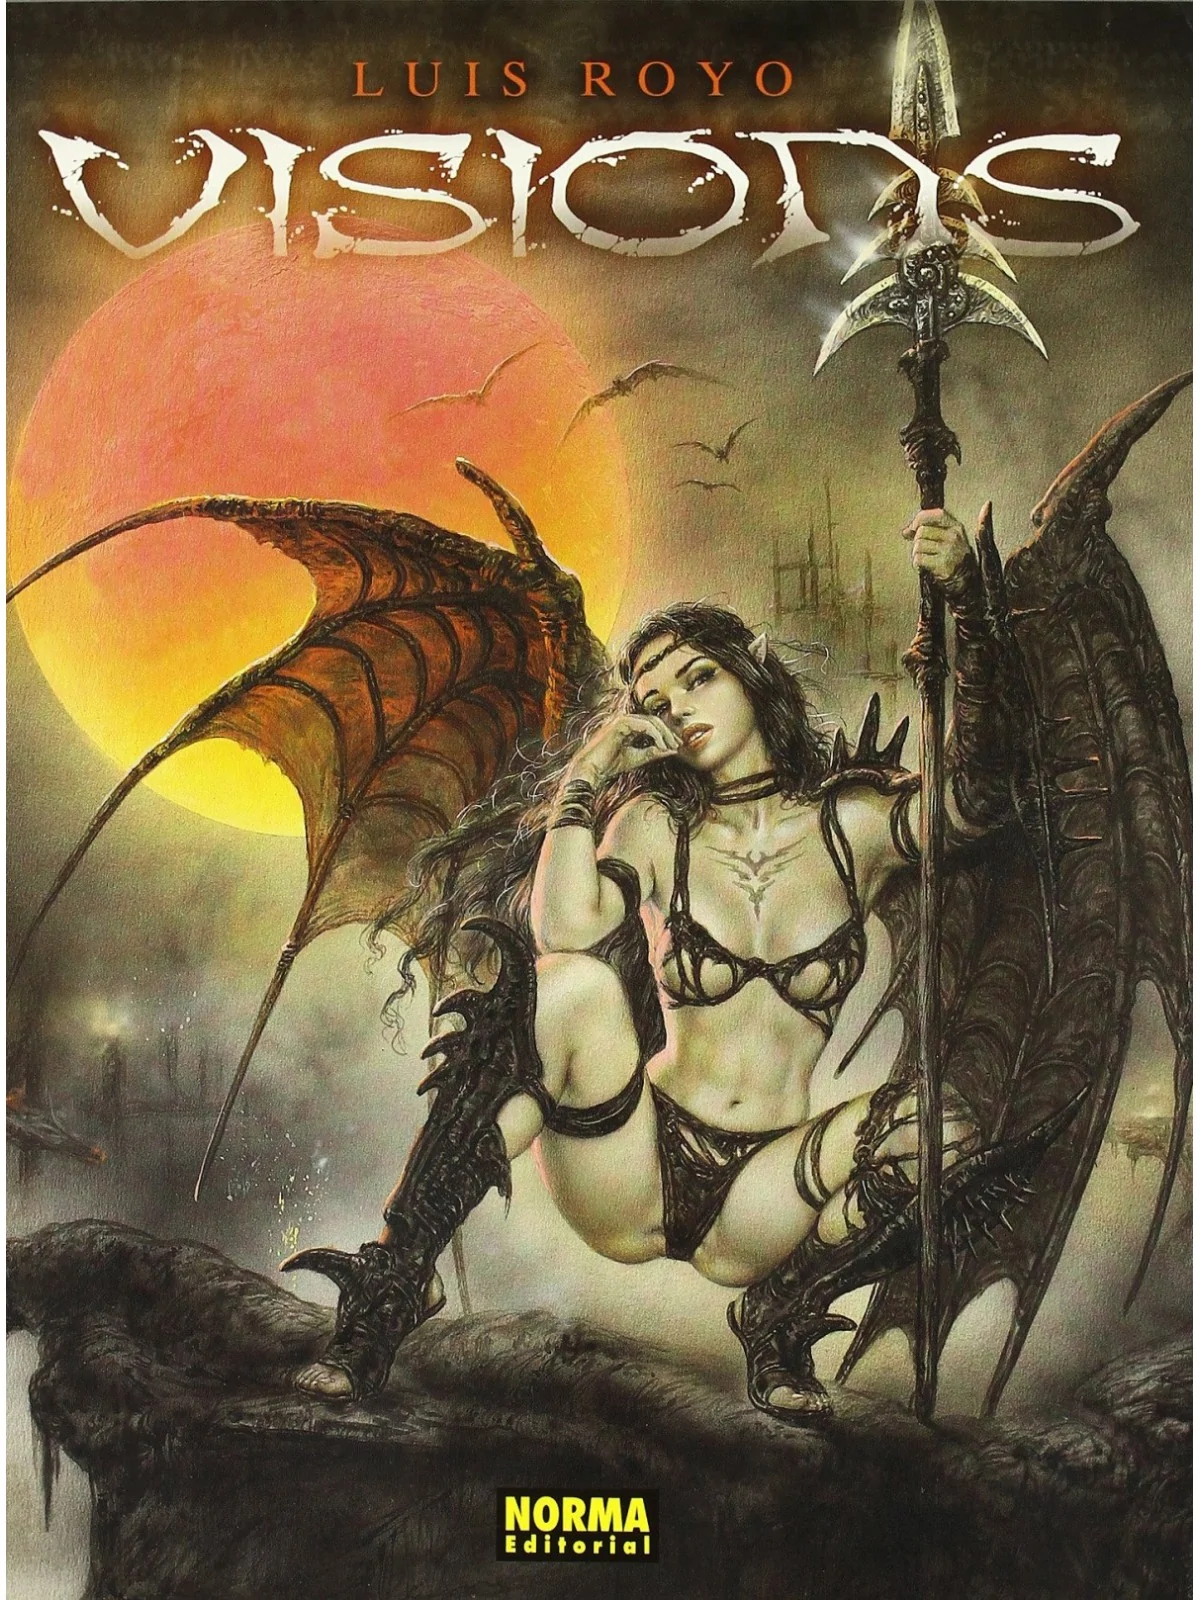 Comprar Visions Rústica barato al mejor precio 14,25 € de Norma Editor